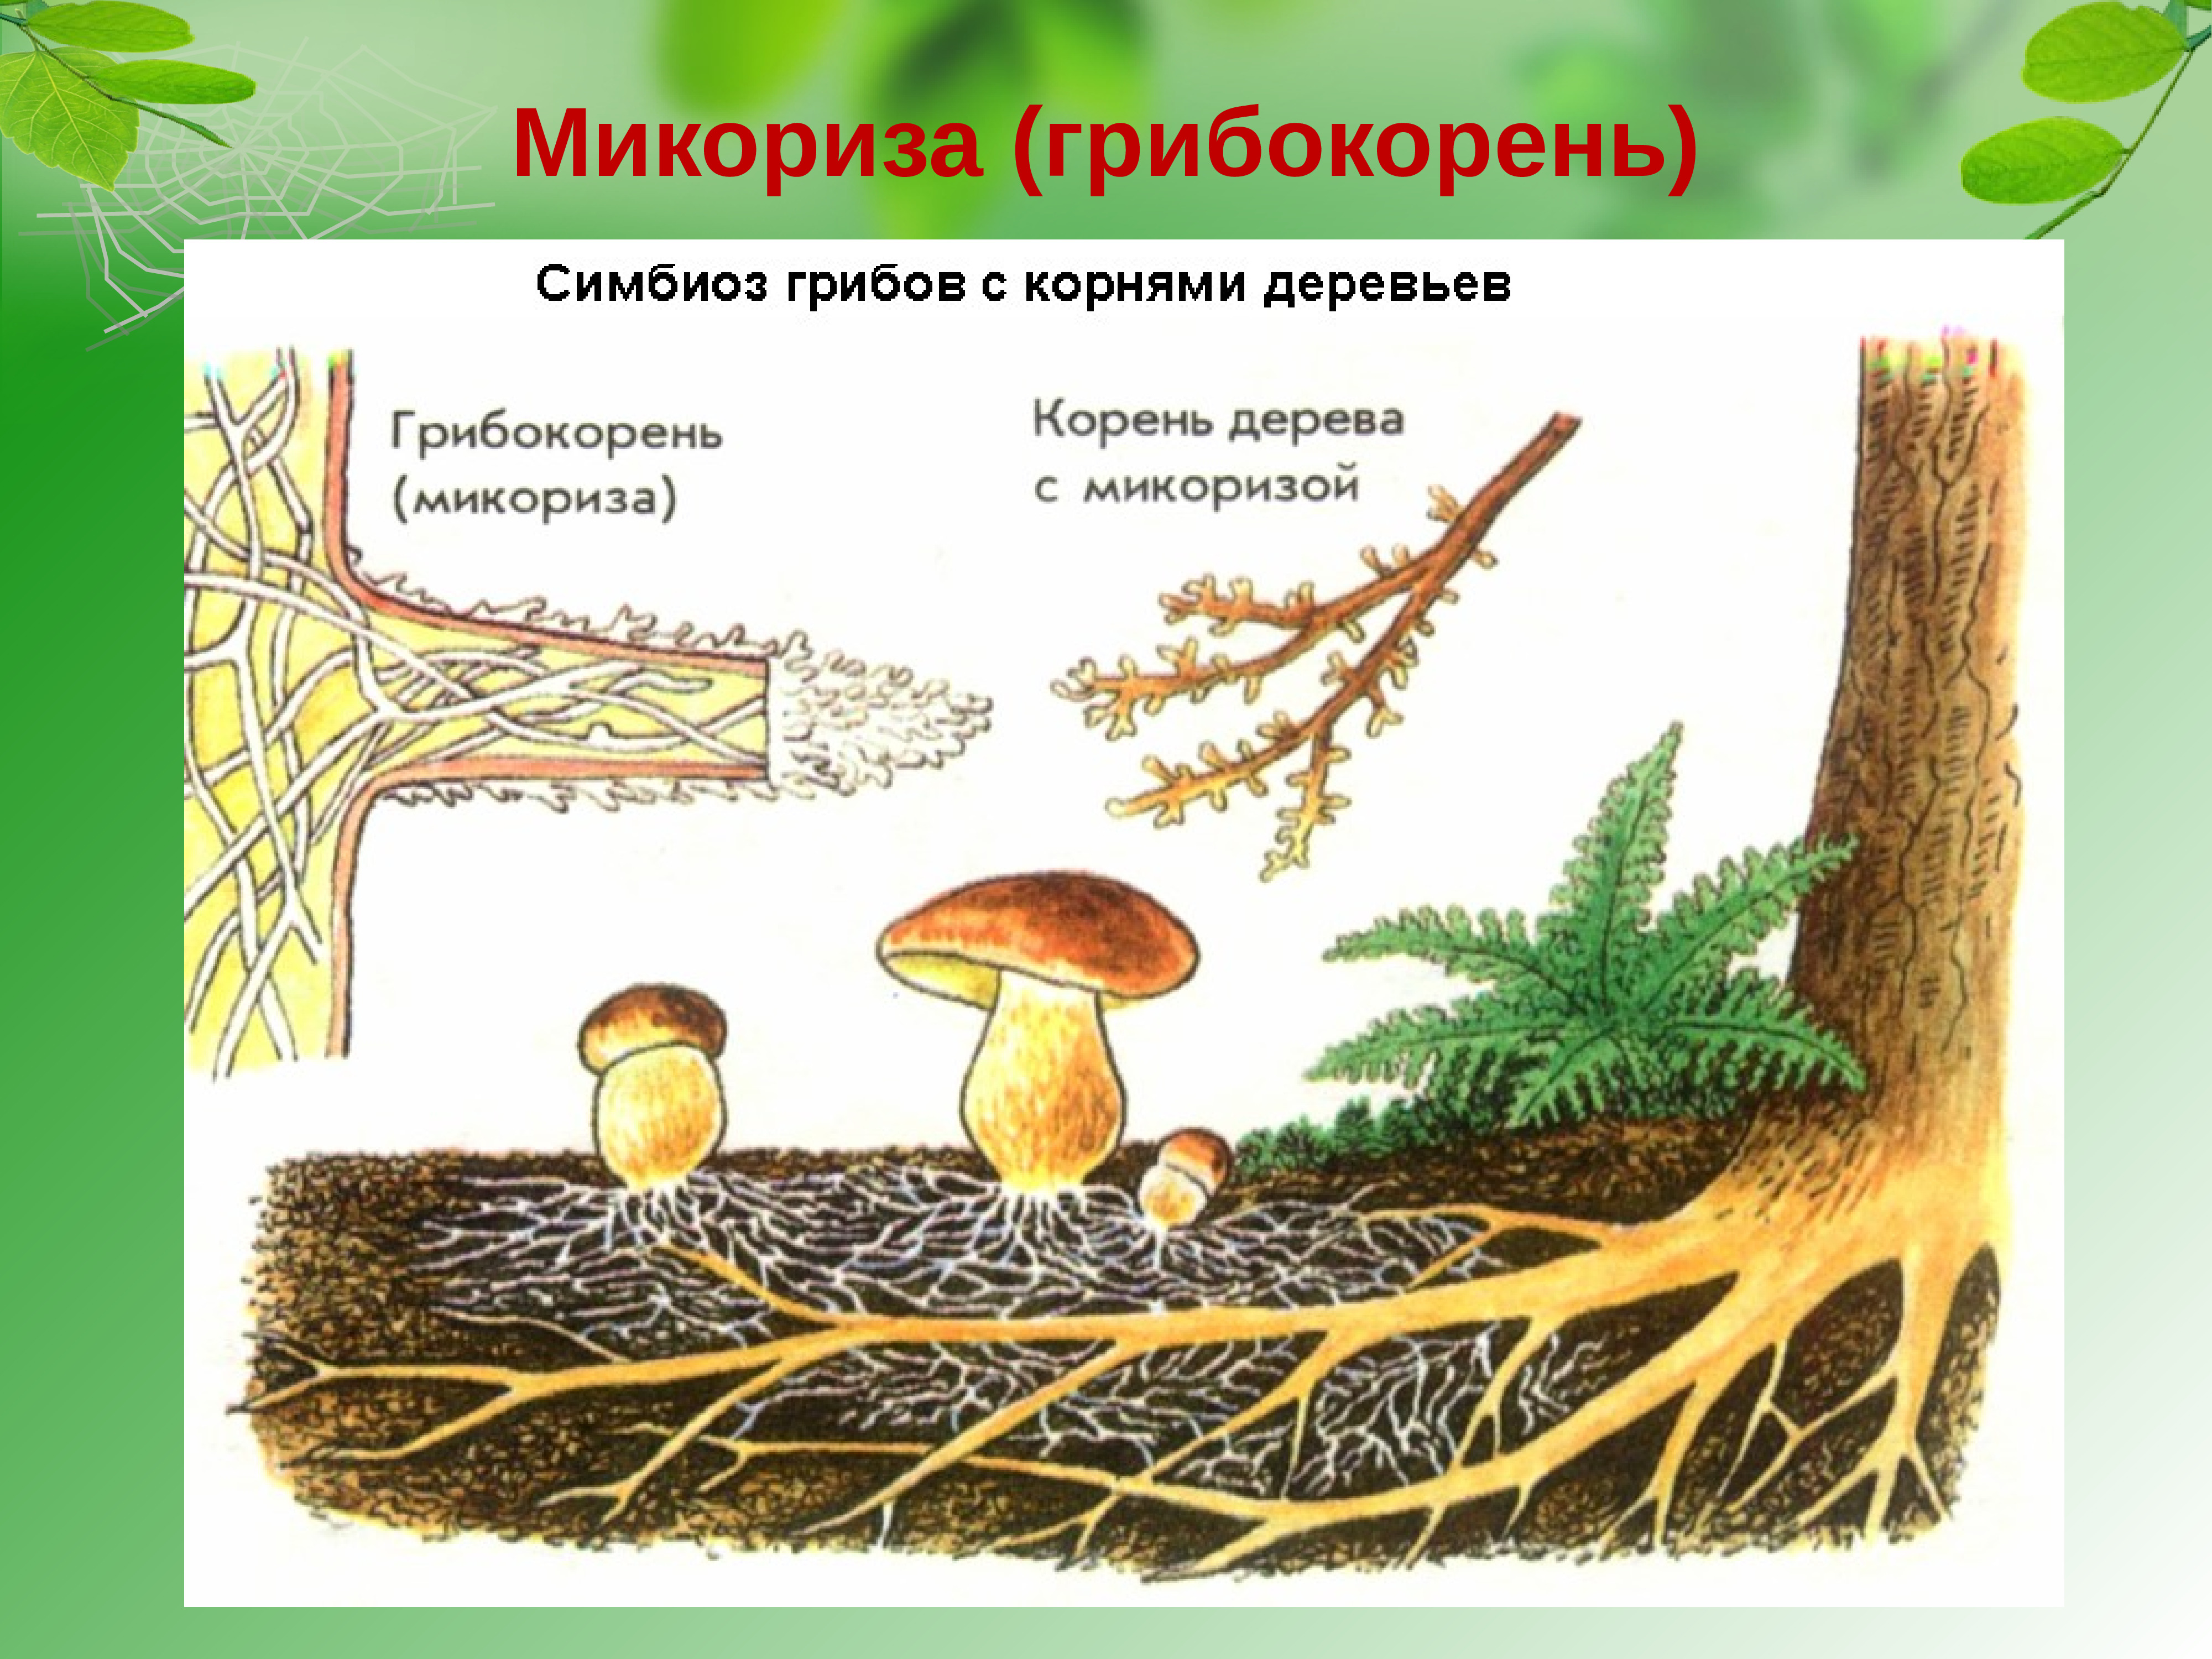 Корневой гриб. Шляпочные грибы микориза. Микориза грибокорень. Строение гриба микориза. Микориза у шляпочных грибов.